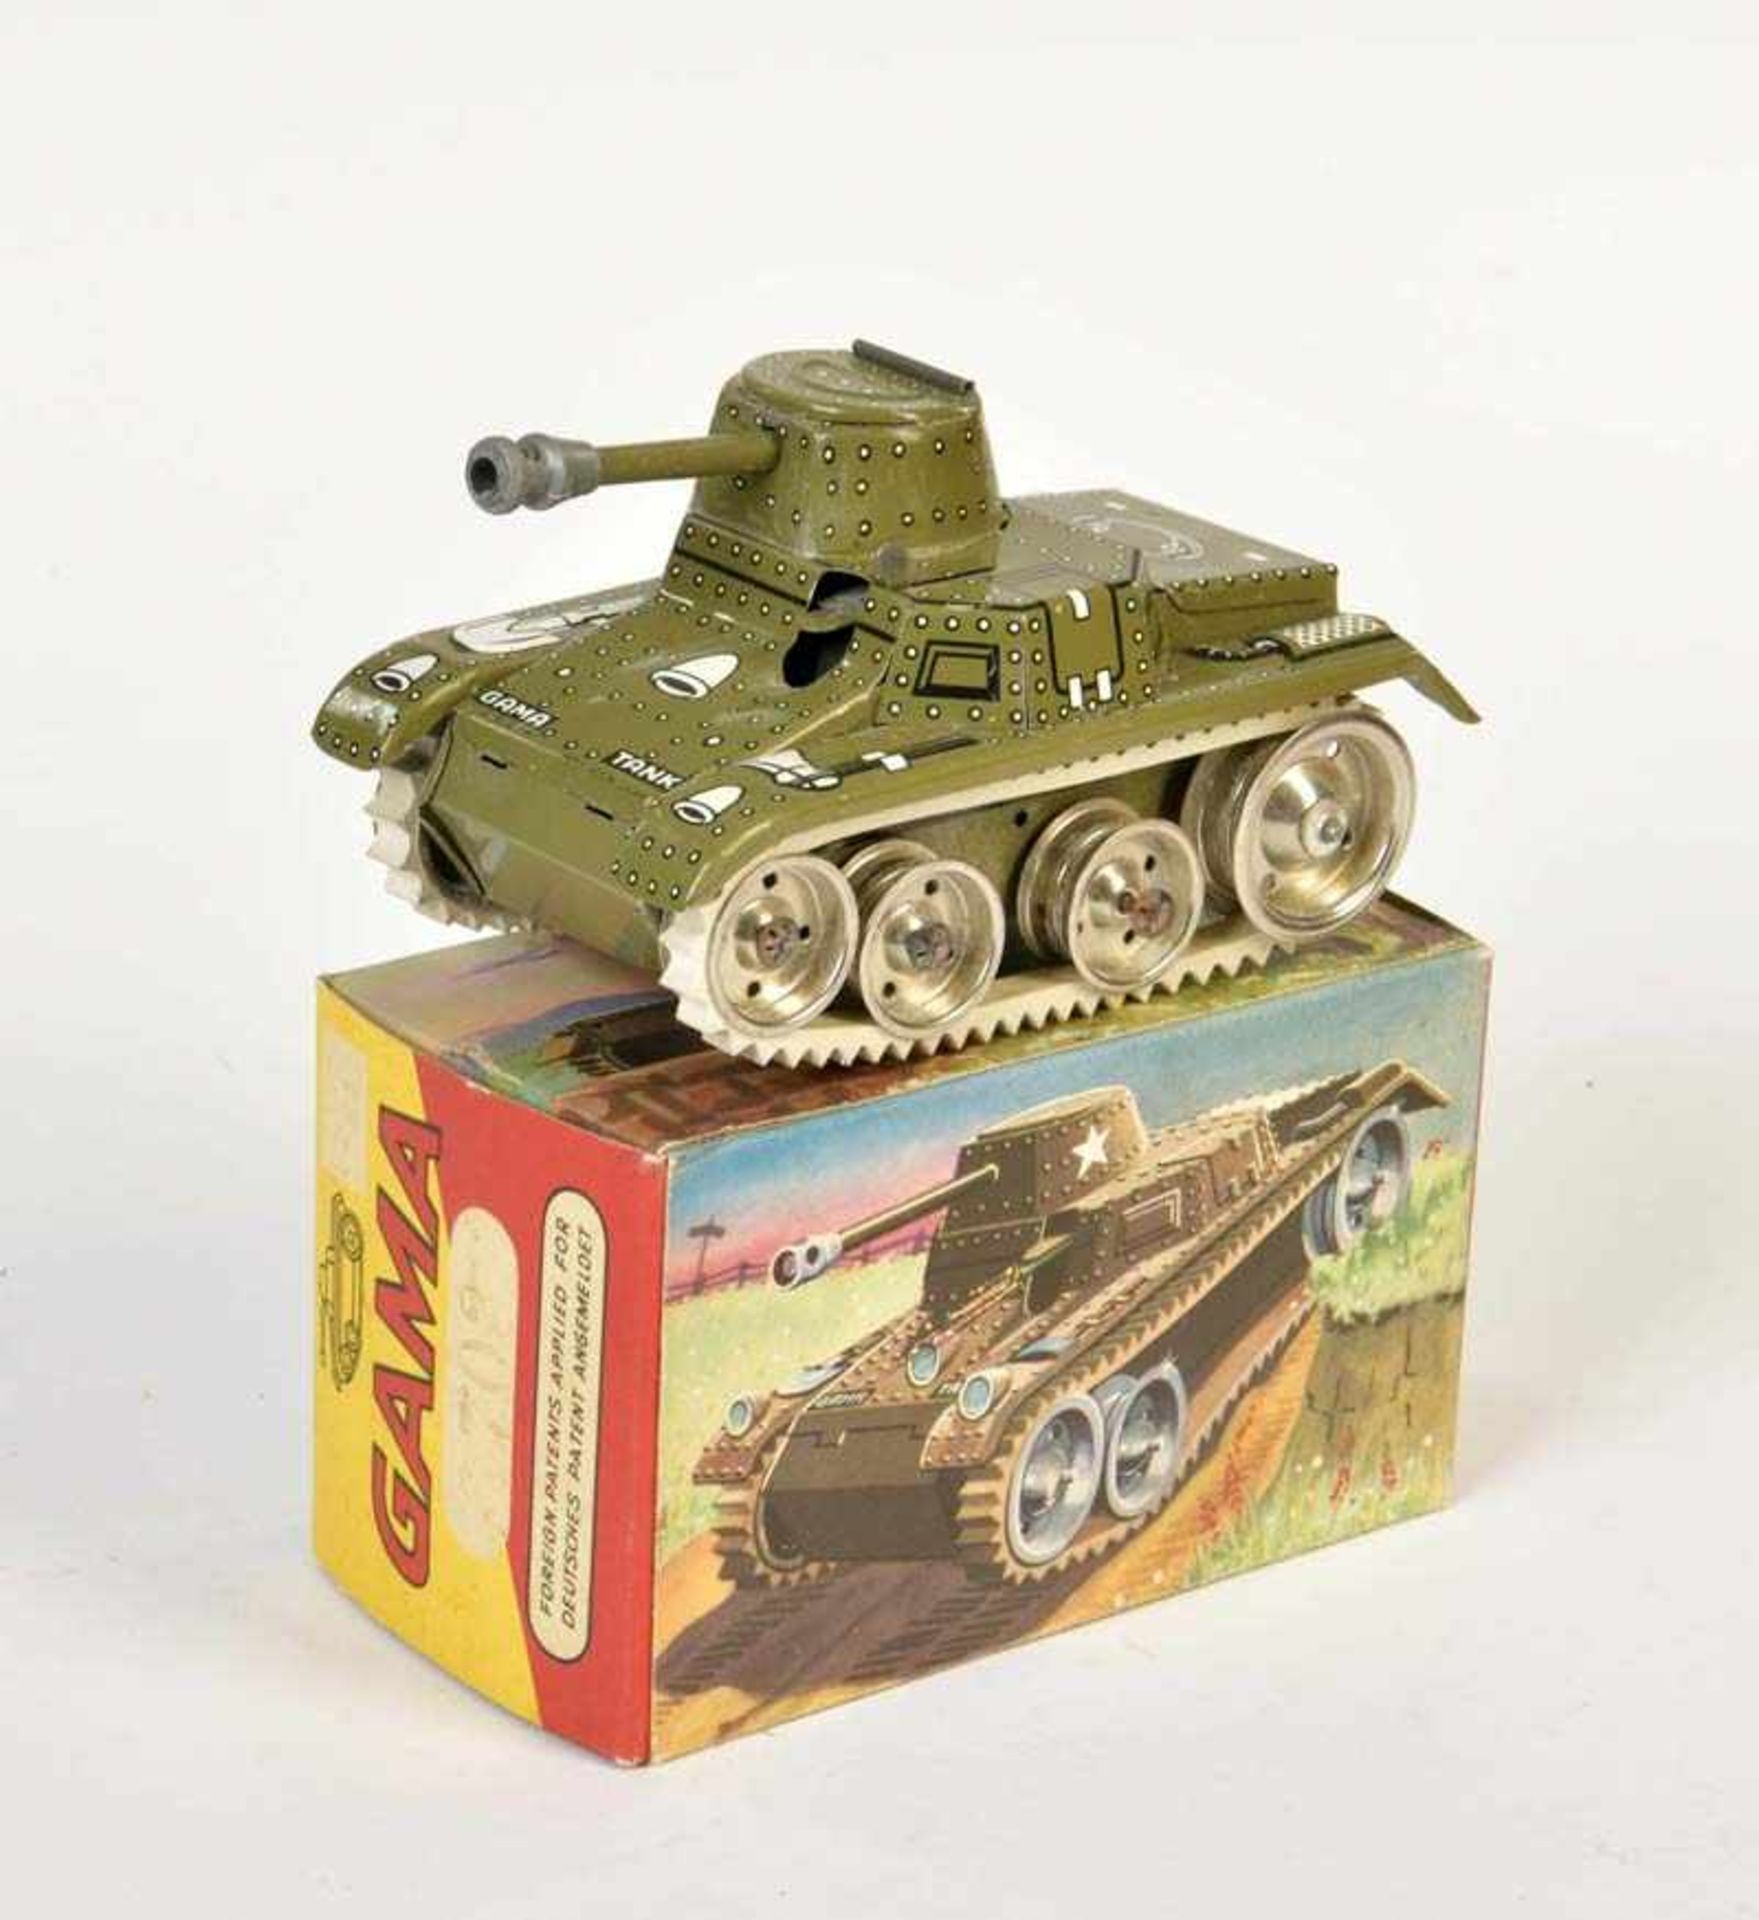 Gama, Tank, US Z. Germany, tin, cw ok, box C 1, C 1Gama, Panzer, US Z. Germany, 13,5 cm, Blech, UW